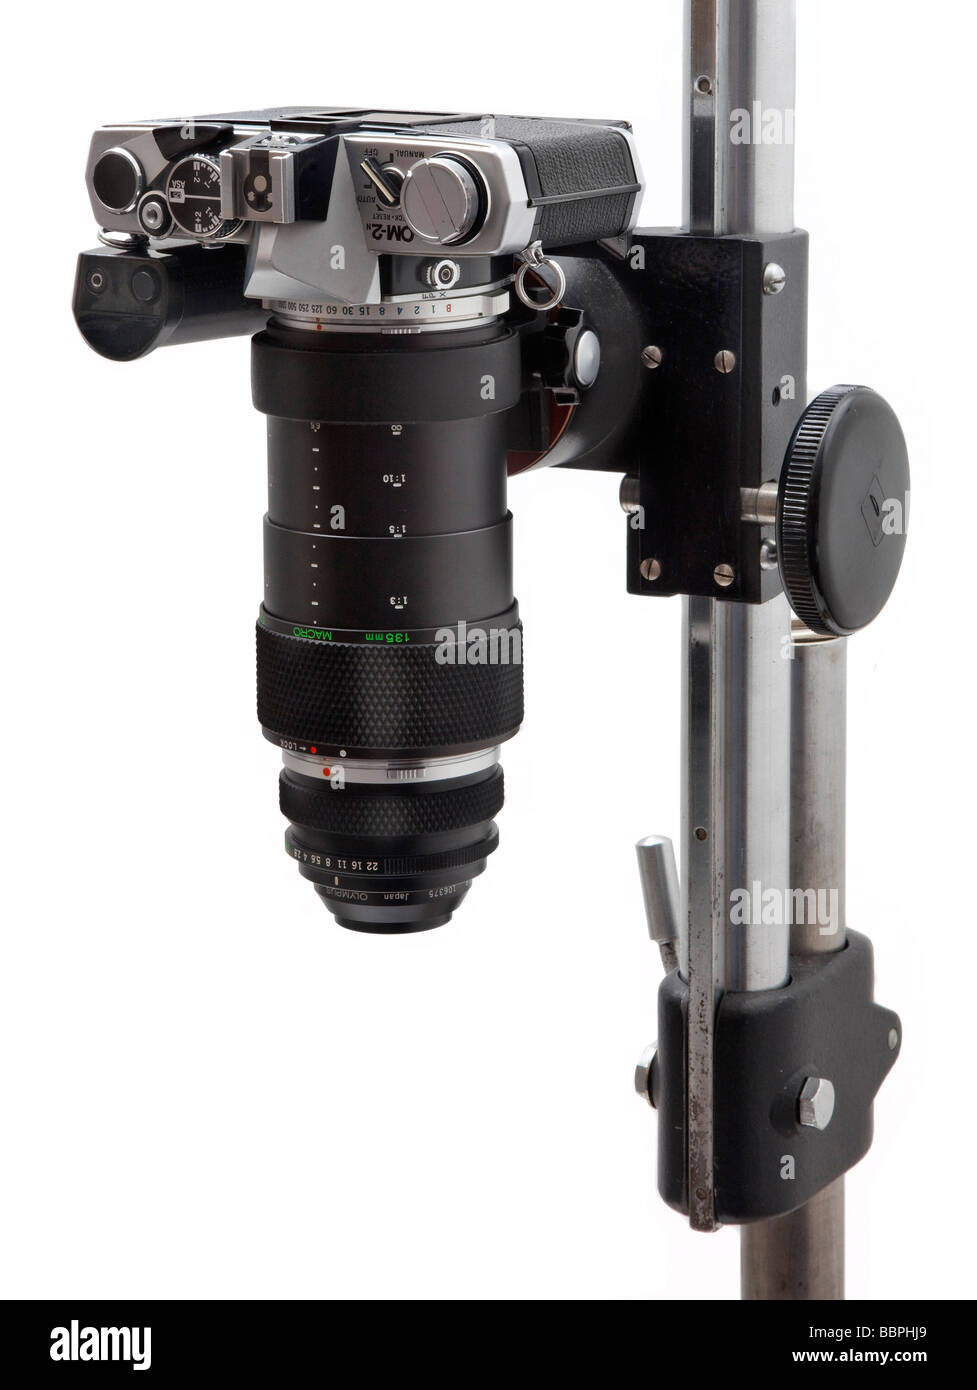 Cámara SLR Olympus OM macro equipo utilizado para cerrar la fotografía, 38mm macro lente varifocal, tubo de extensión, montado verticalmente Foto de stock